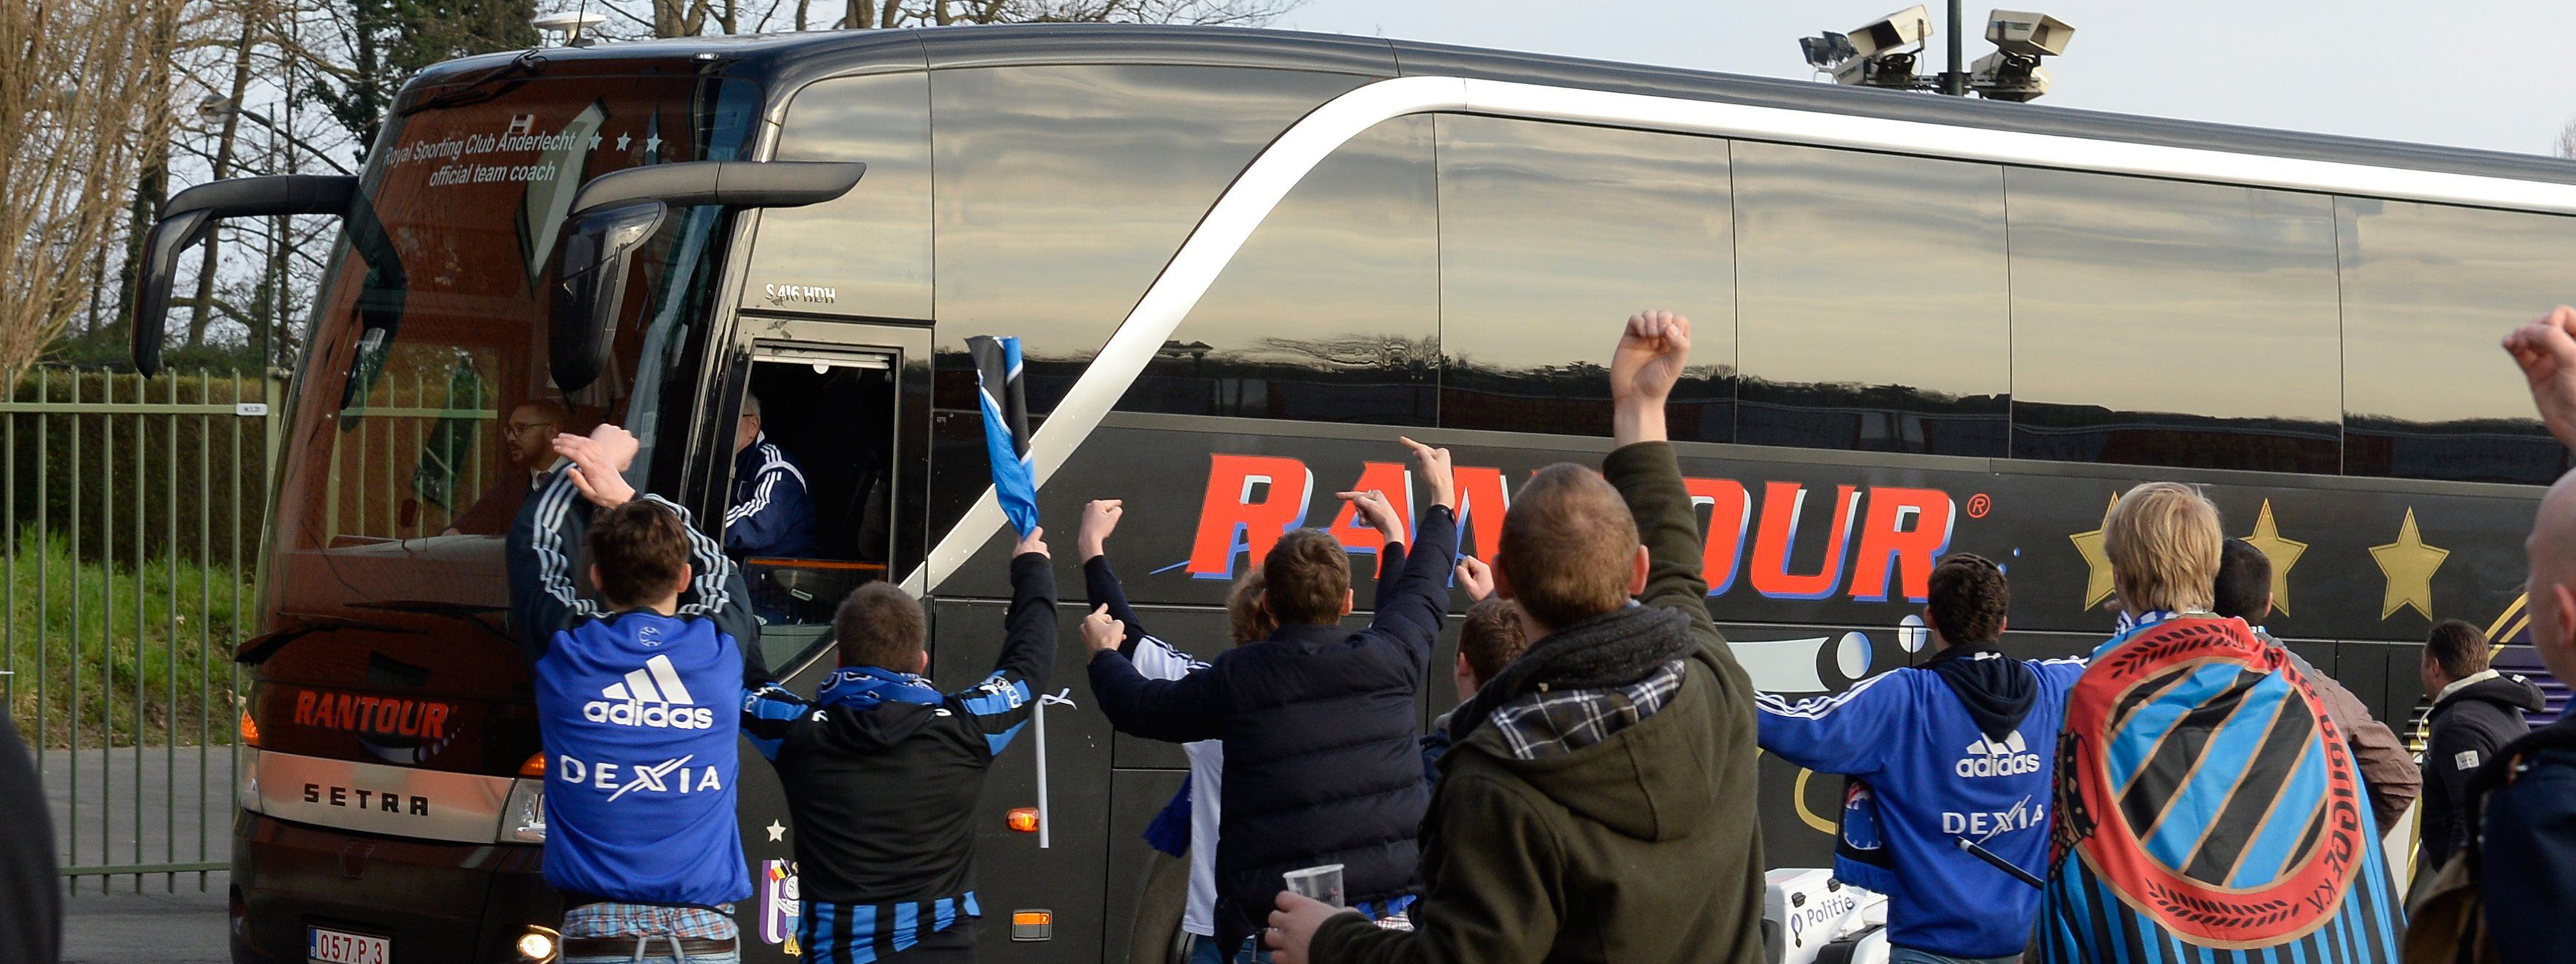 Fans van Club Brugge ontvangen de spelersbus van Anderlecht niet bepaald vriendelijk.